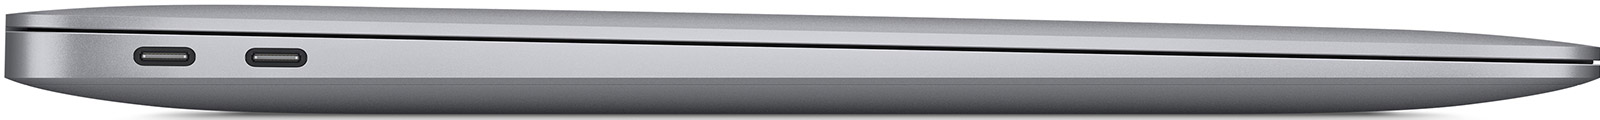 Apple-MacBook-Air-13-3-M1-8-Core-8-GB-256-GB-7-Core-Grafik-Space-Grau-CH-05.jpg